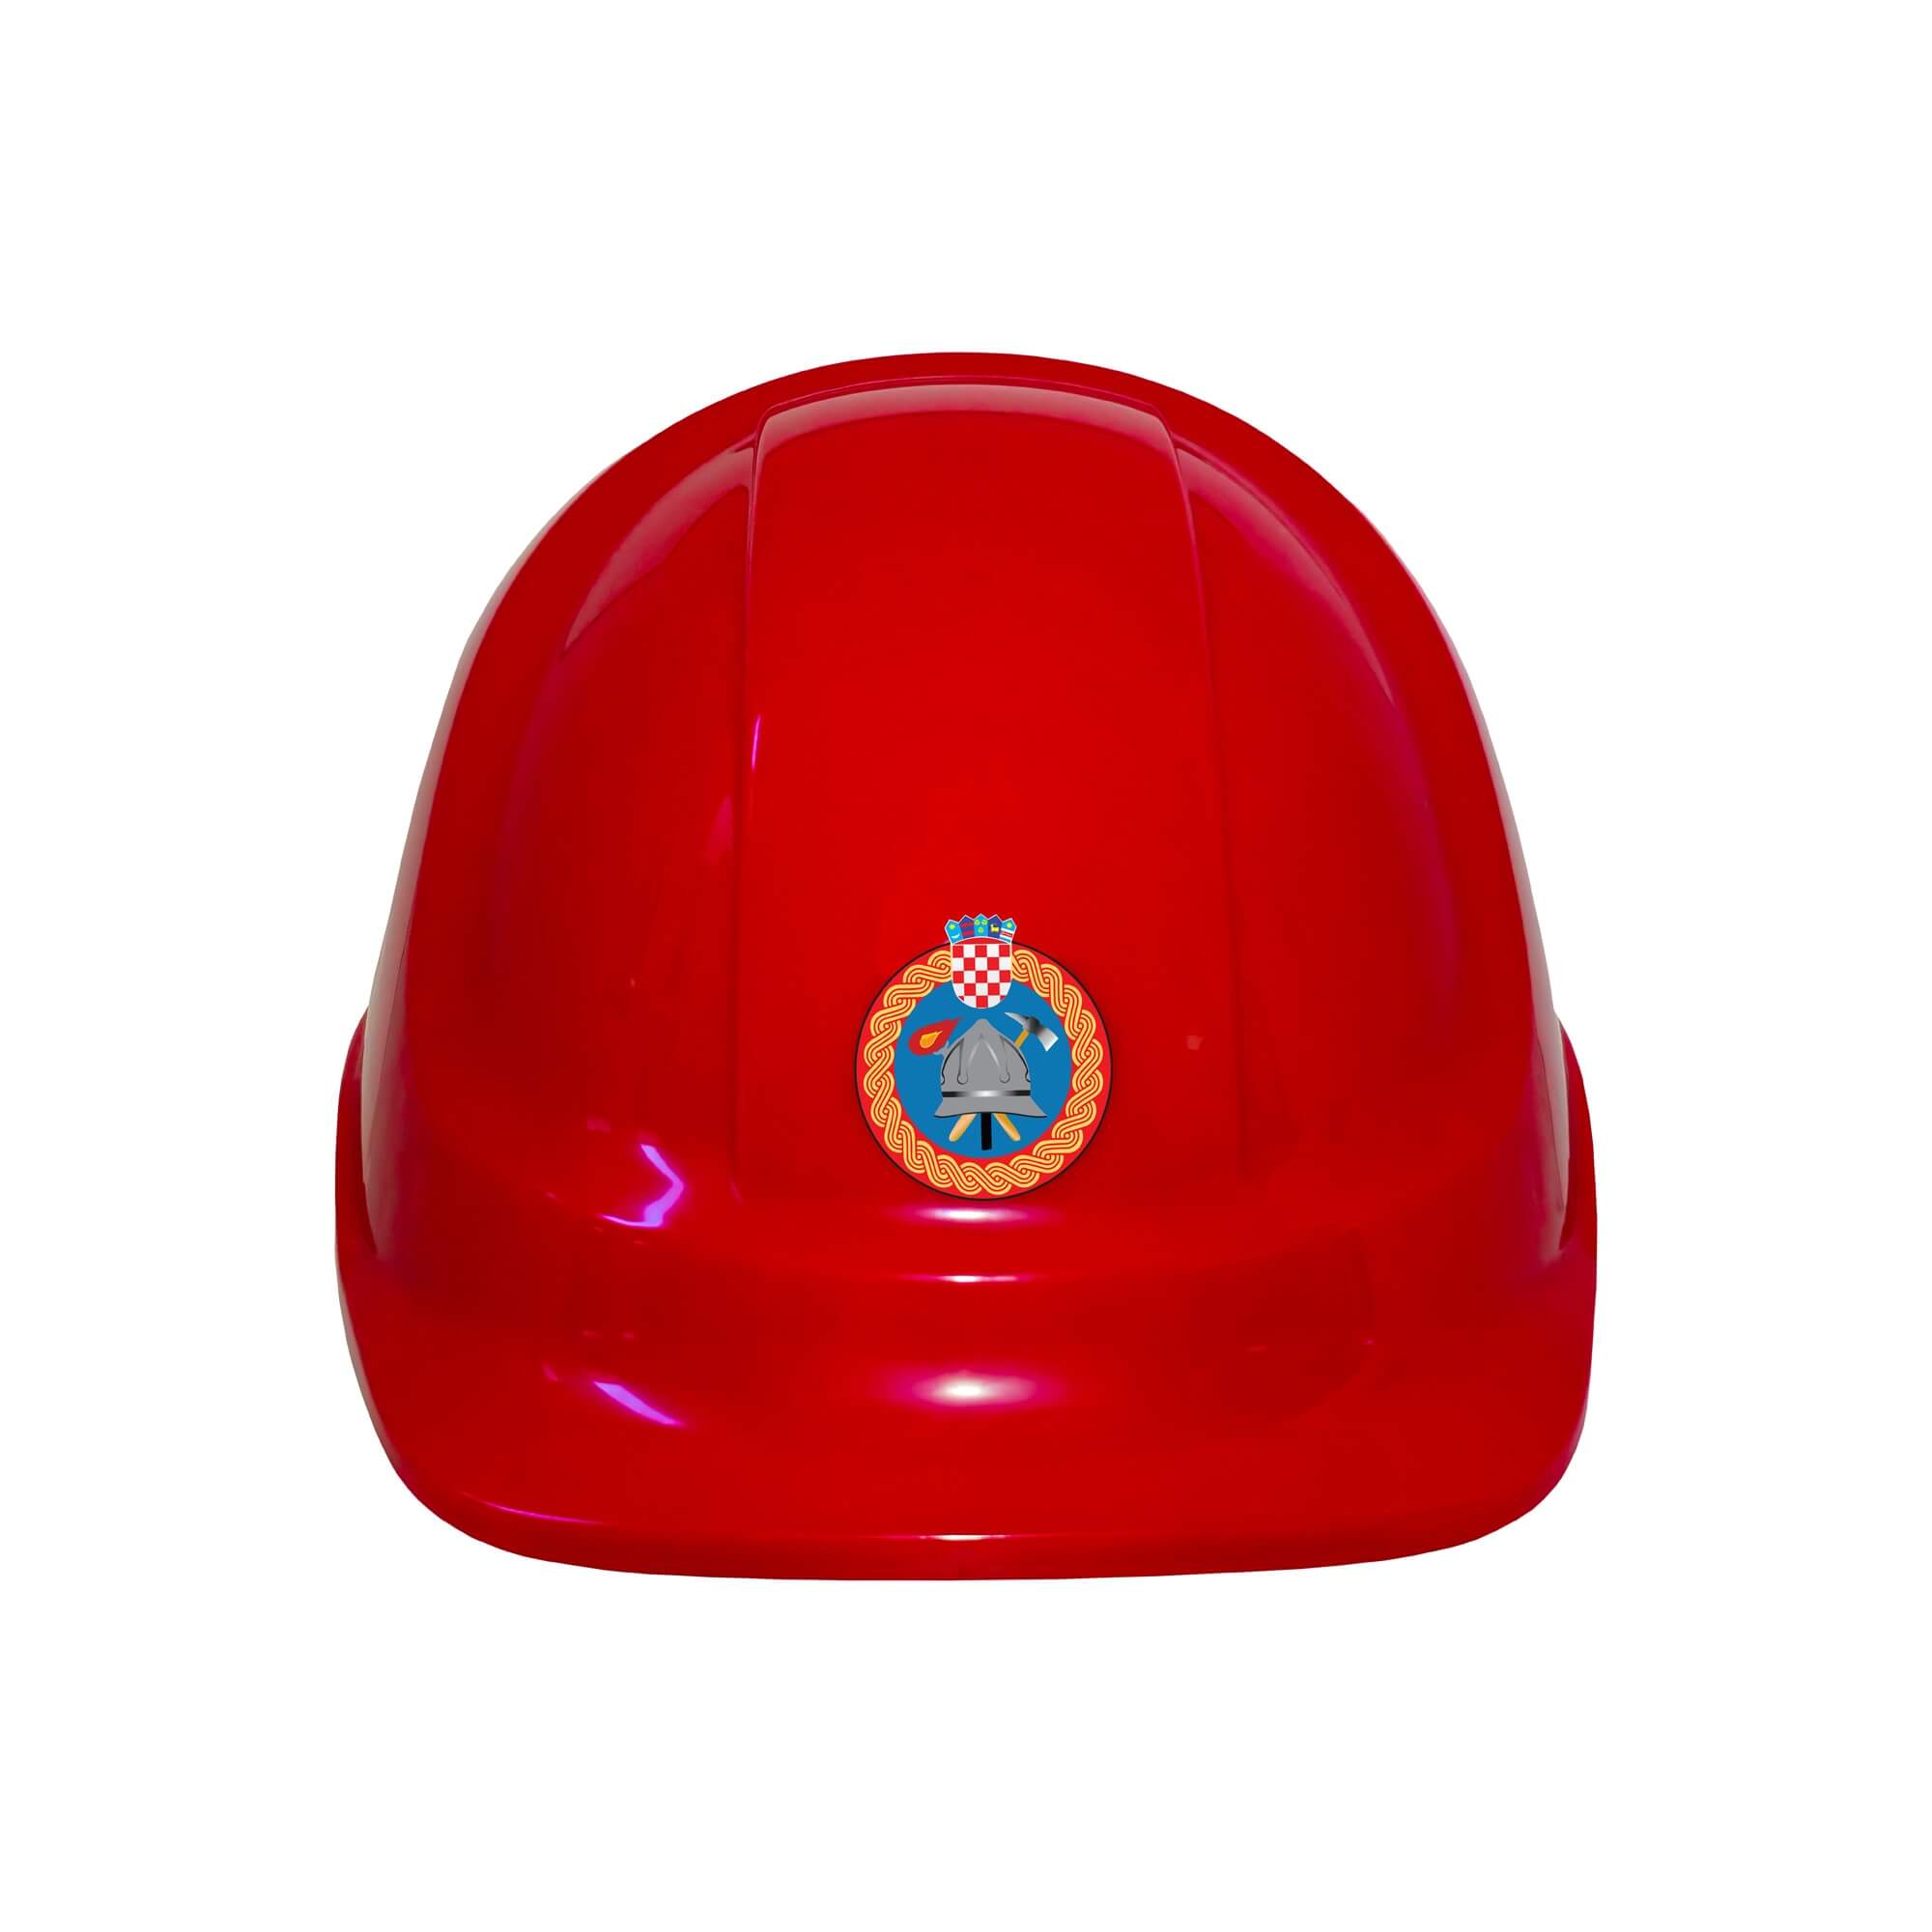 Firefighter helmet for children